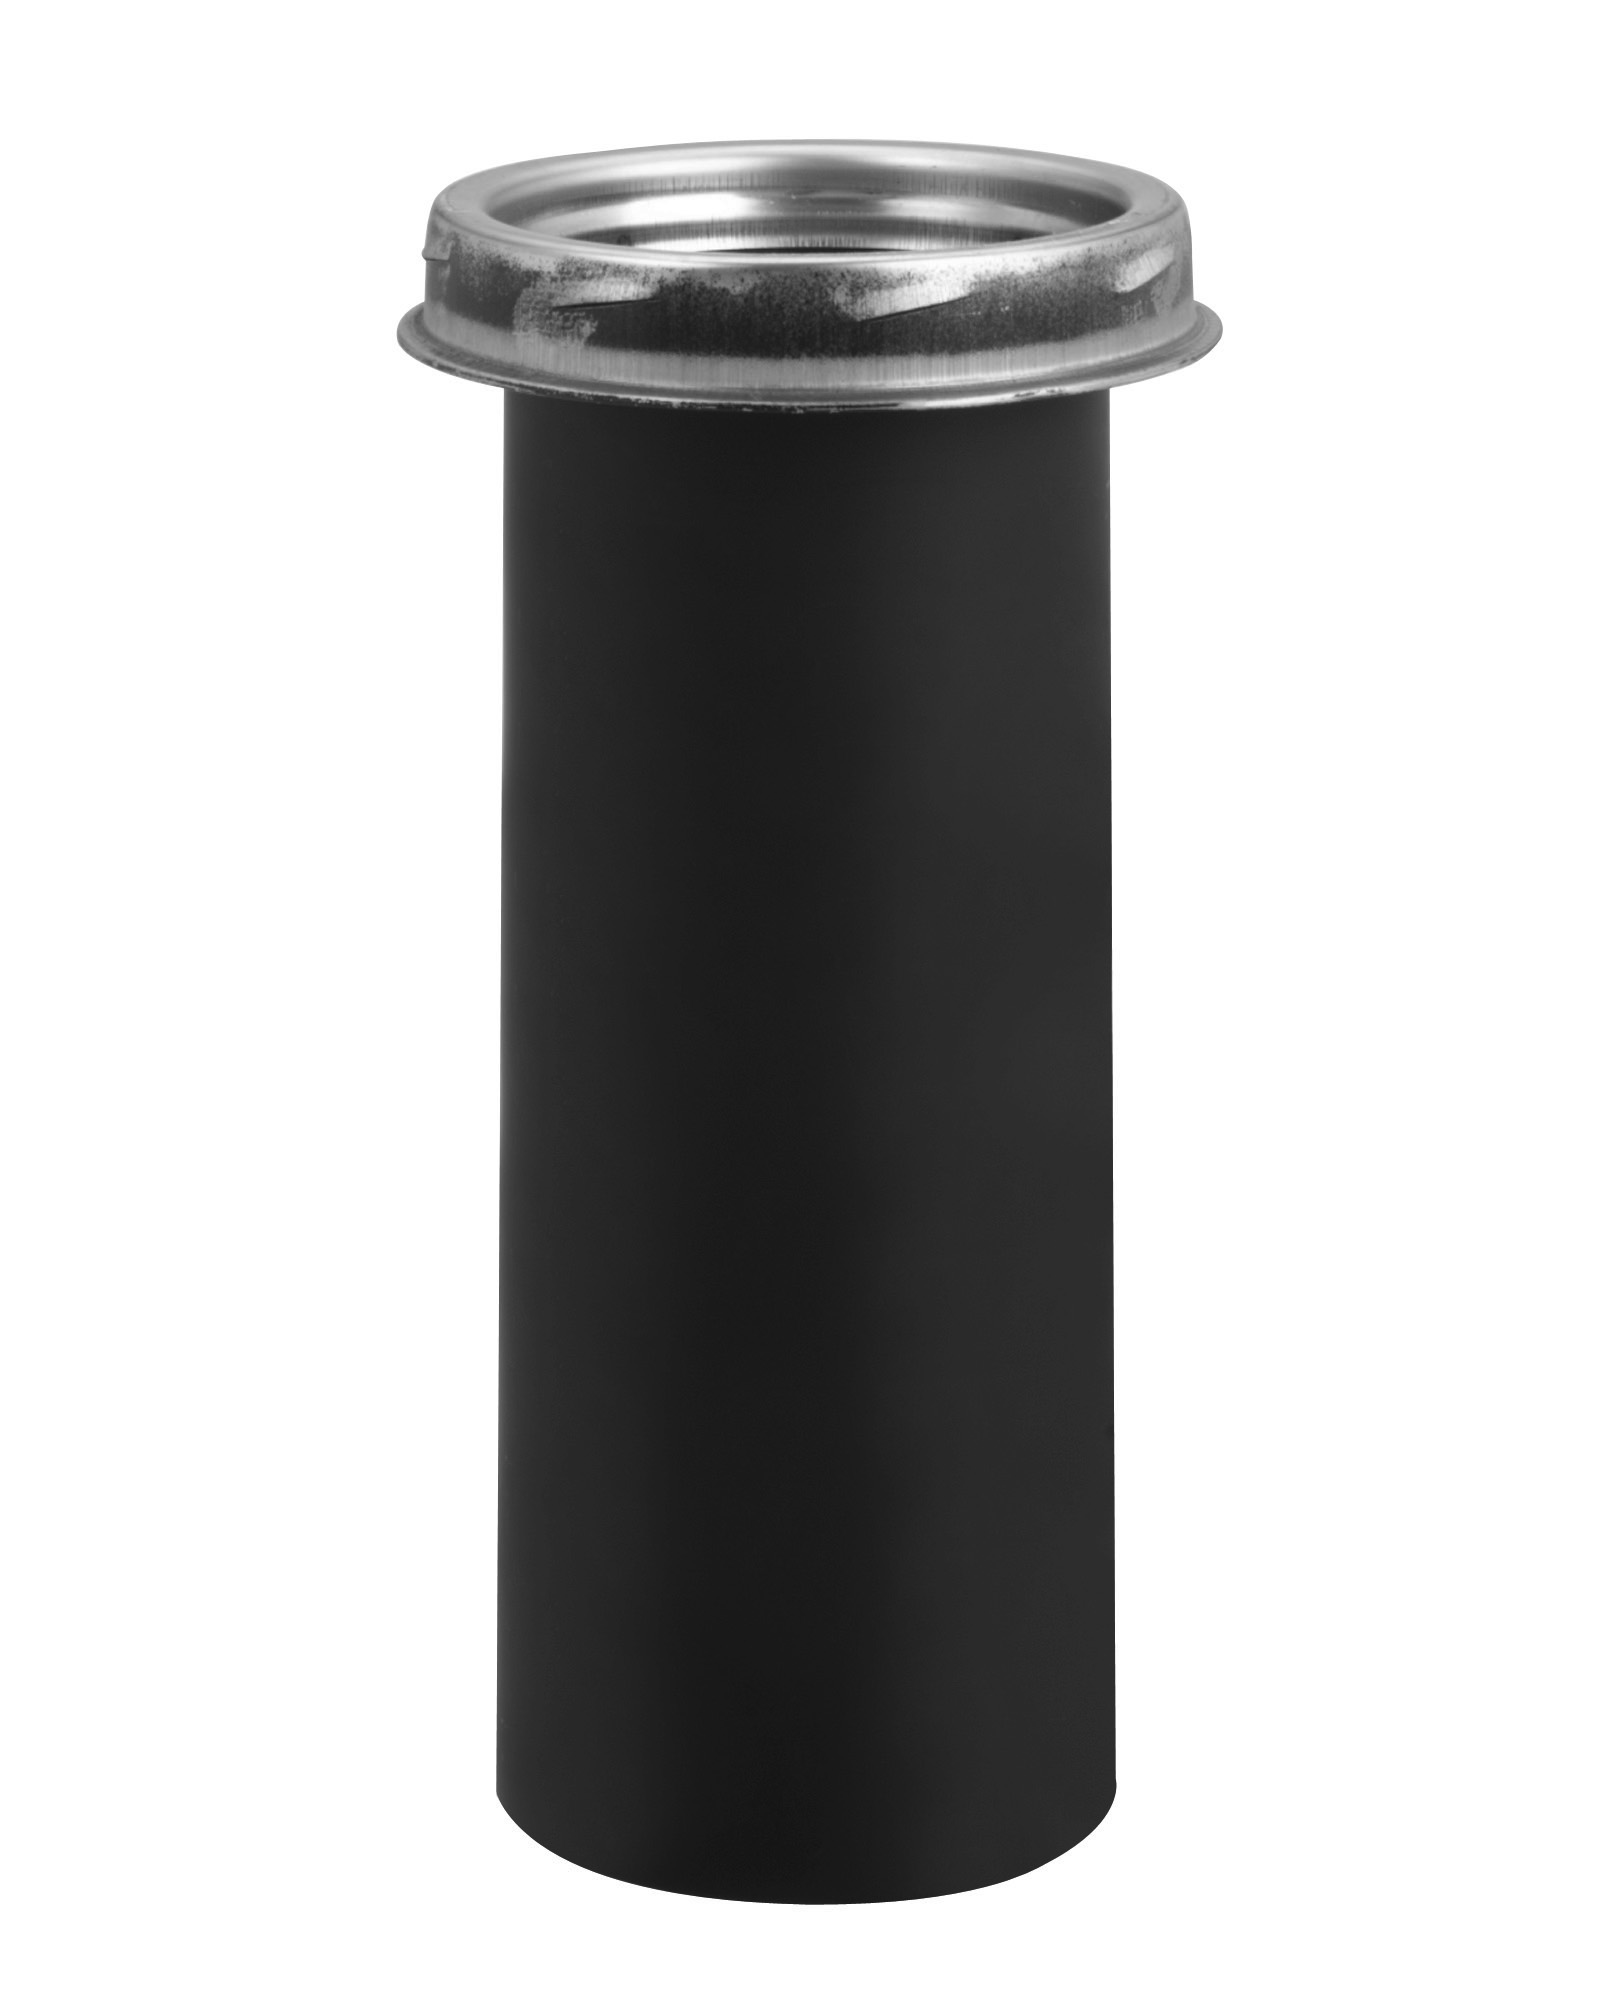 Selkirk Metal Best Ultra Temp Stainless Steel Chimney Pipe Adapter in 6" 8" 